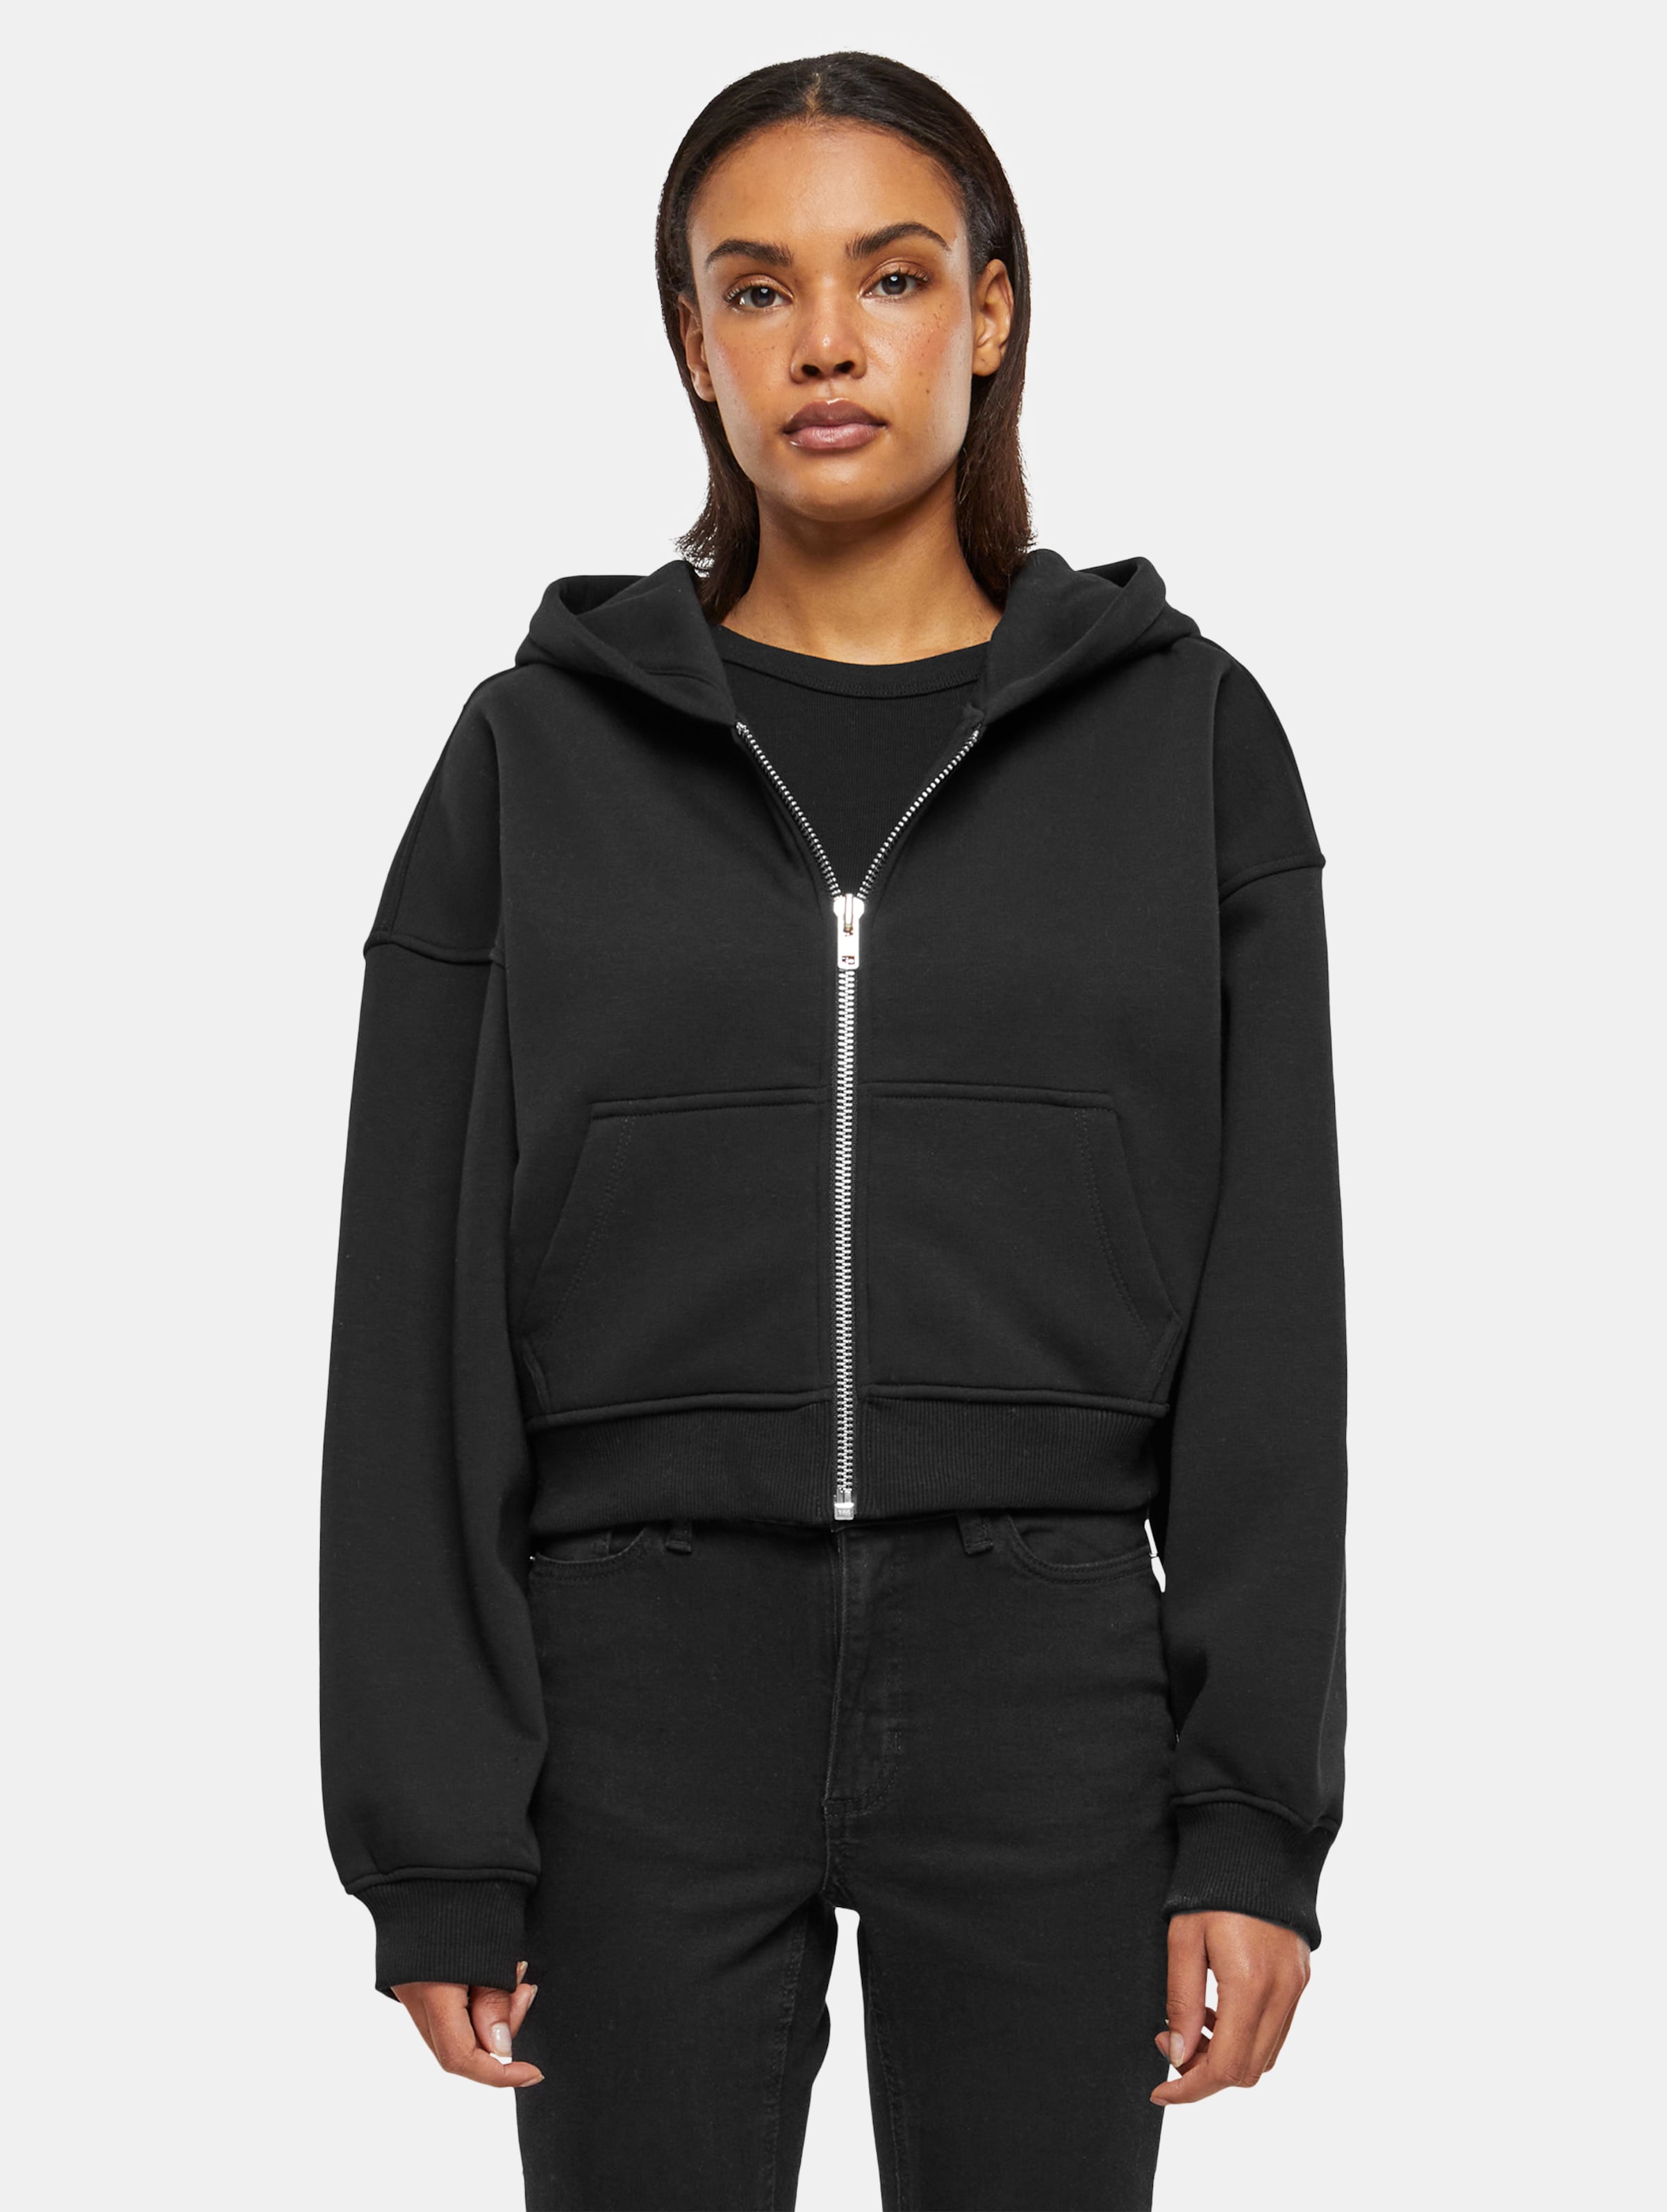 Prohibited Cropped Zip Hoodies Frauen,Unisex op kleur zwart, Maat XL